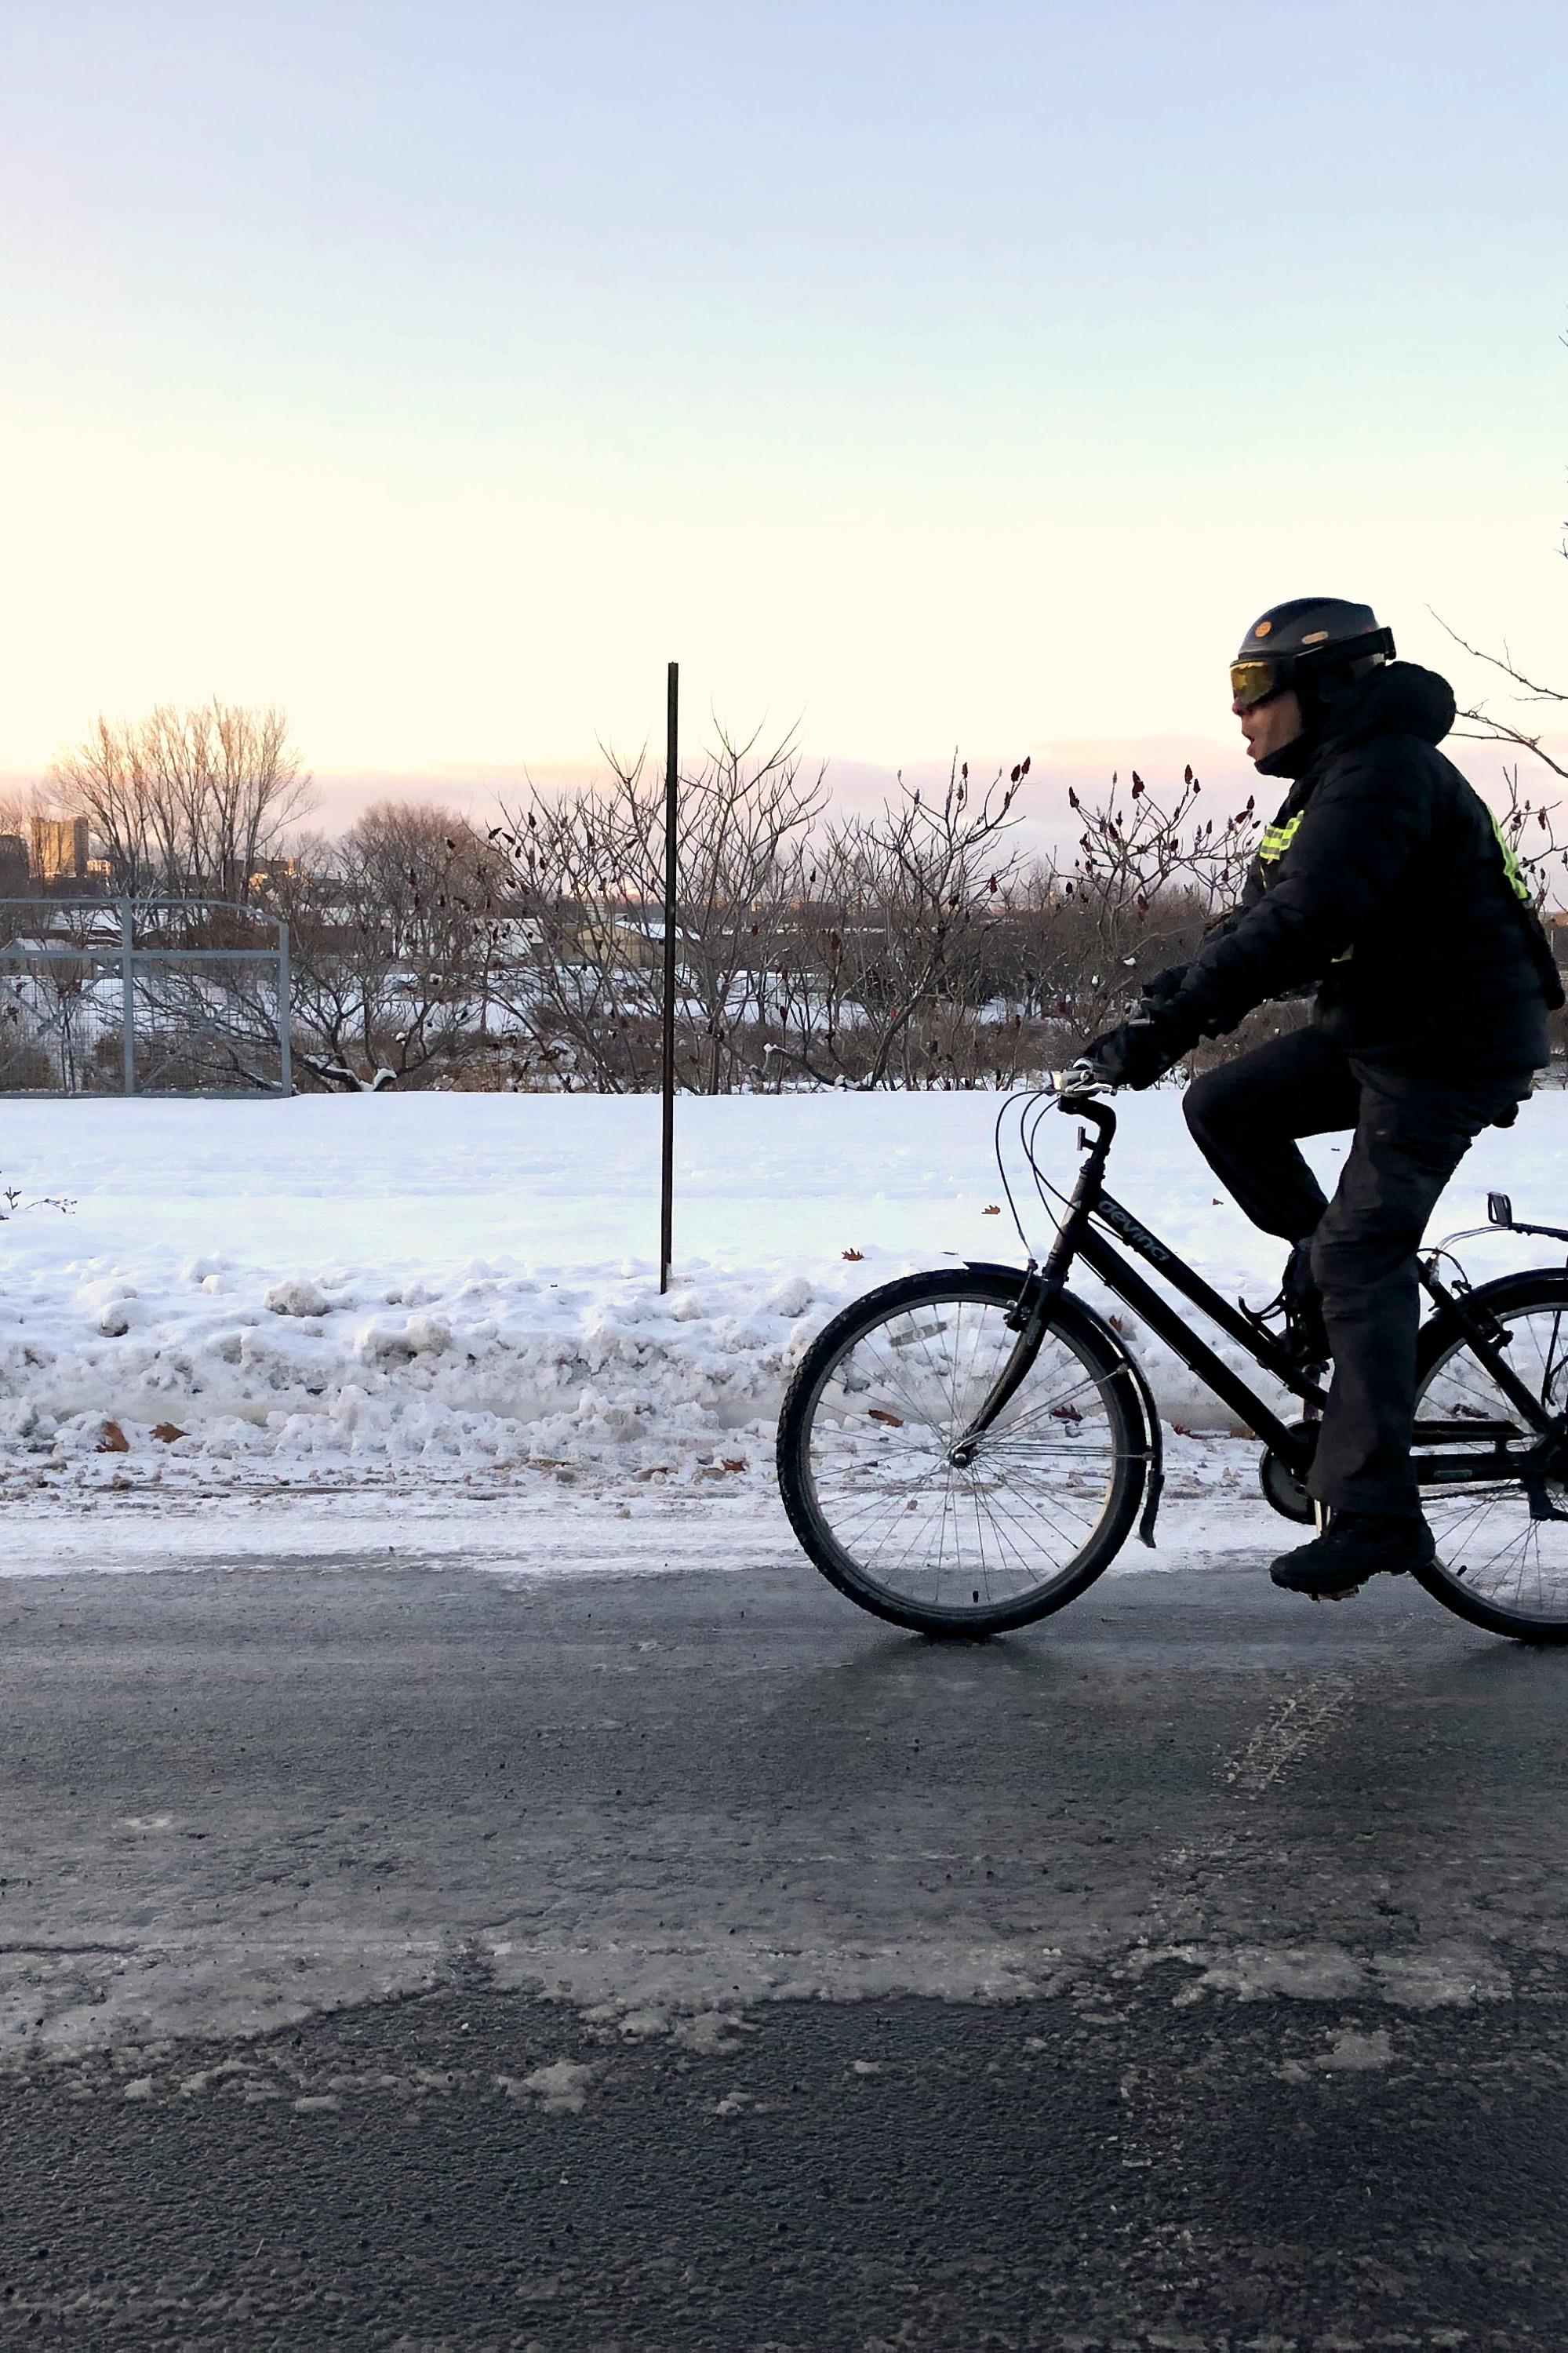 Des conseils pour rouler à vélo en hiver
Des conseils pour rouler à vélo en hiver